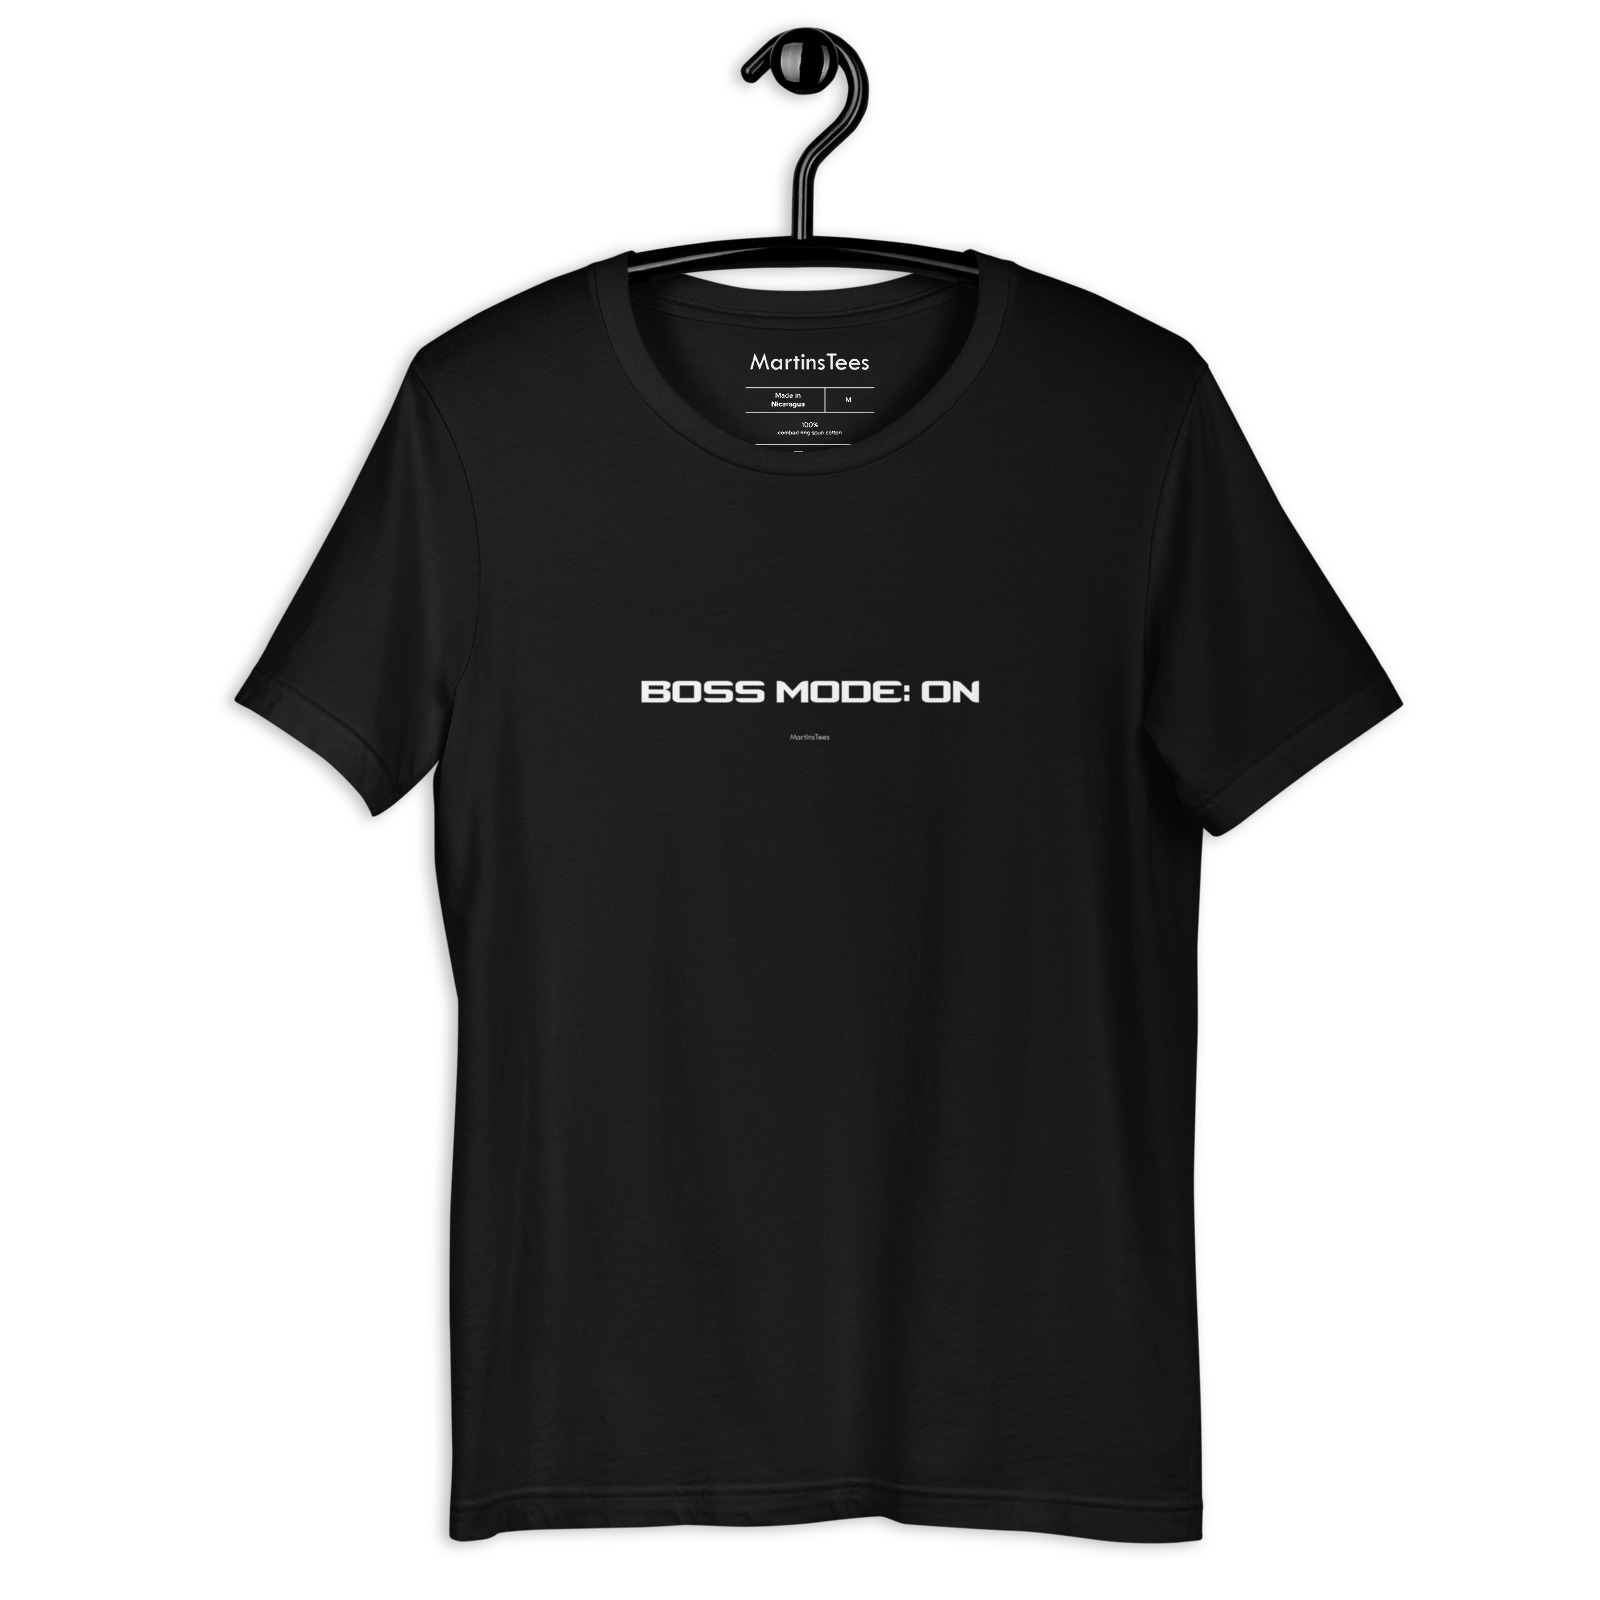 T-shirt: BOSS MODE: ON